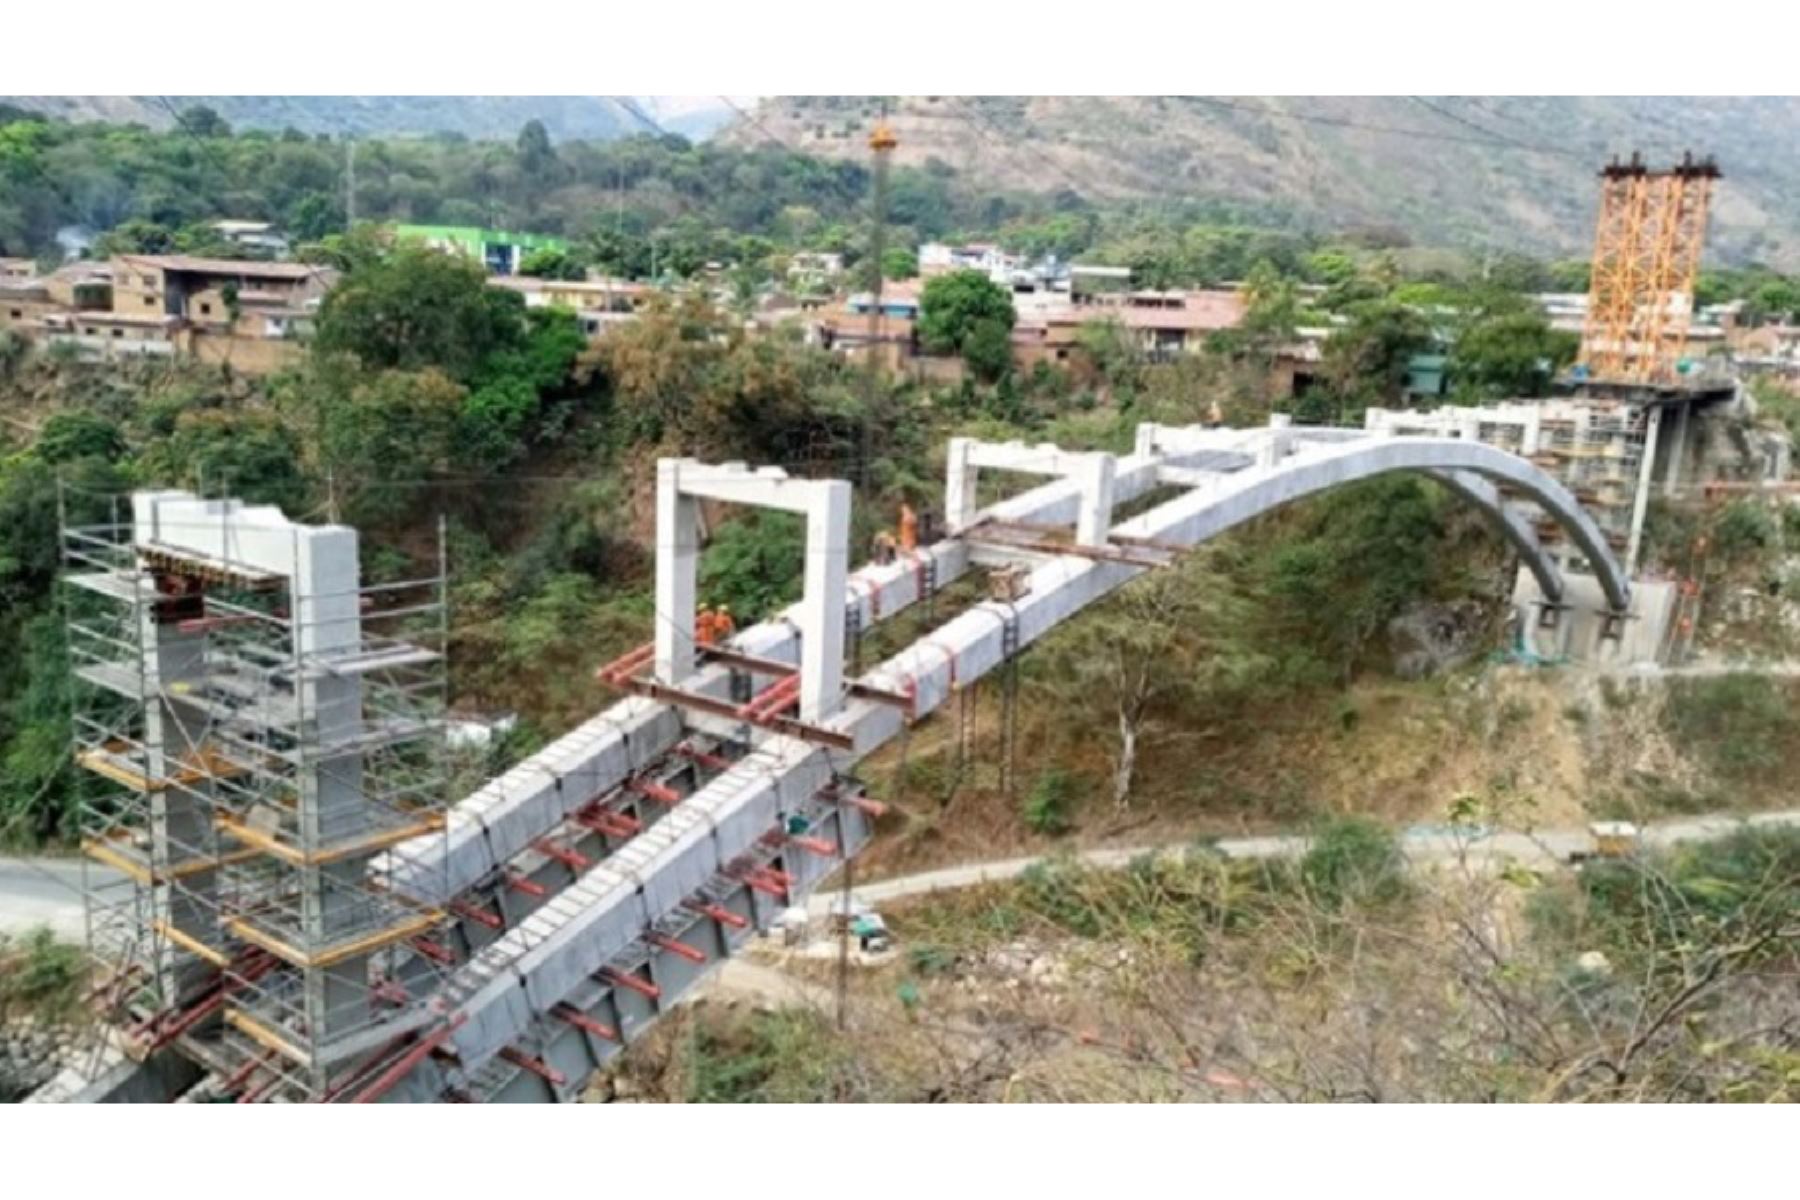 El Ministerio de Transportes y Comunicaciones (MTC), a través de Provias Nacional, reanudó los trabajos para la construcción del puente Maranura, ubicado en la carretera Cusco-Quillabamba, perteneciente a la provincia de La Convención, en la región Cusco. Foto: Ministerio de Transportes y Comunicaciones